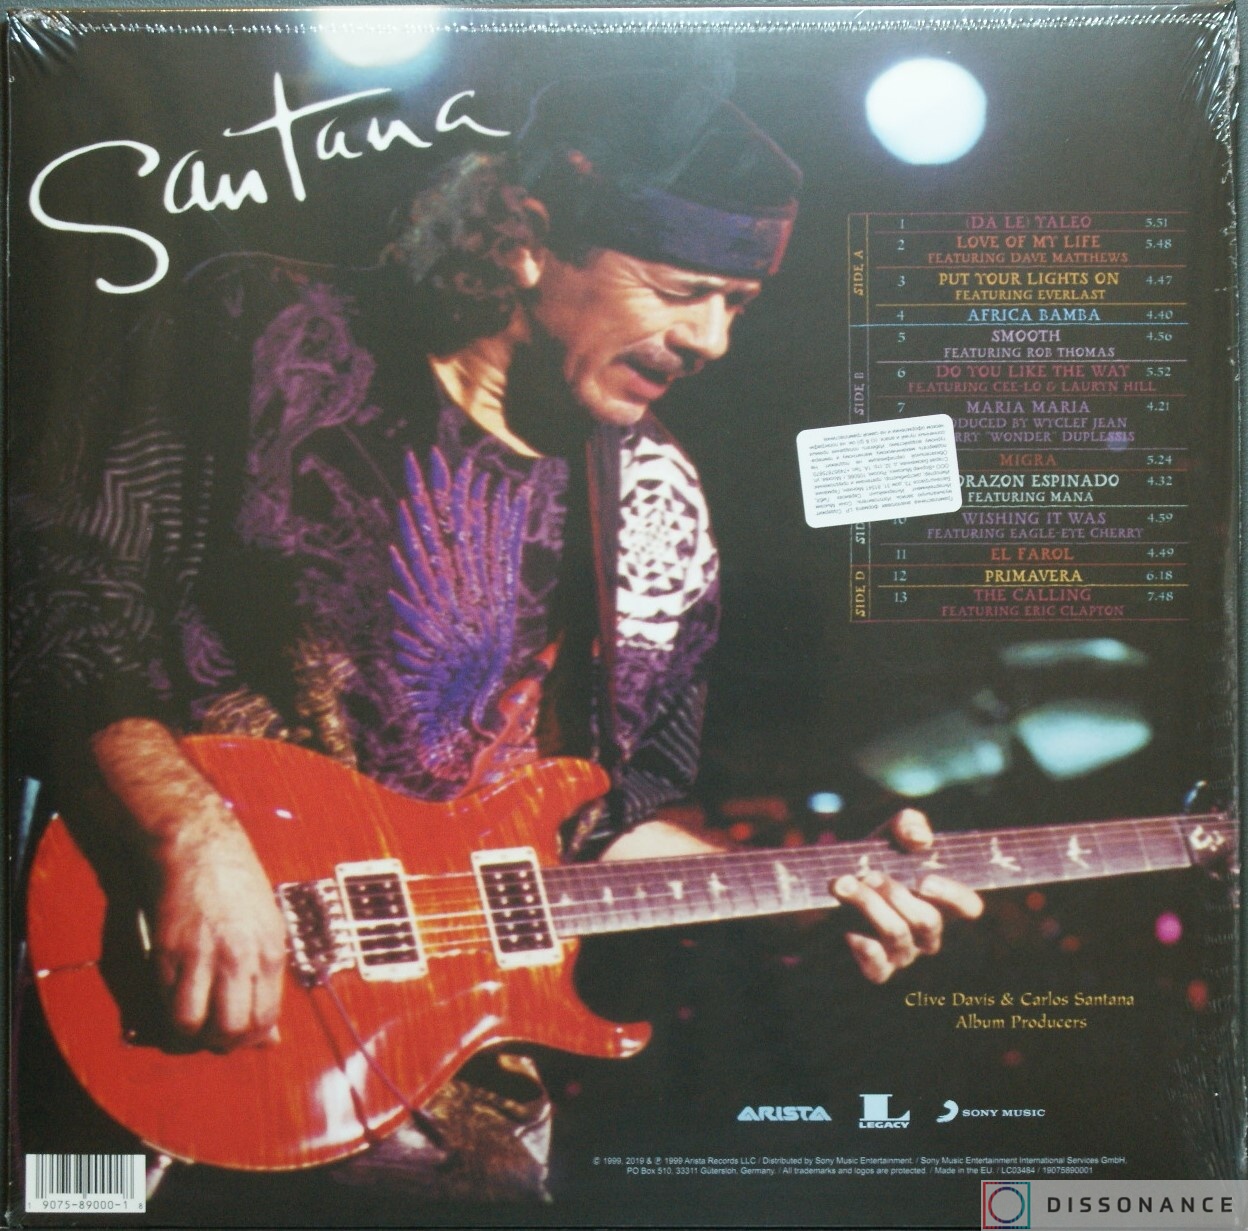 Виниловая пластинка Santana - Supernatural (1999) - фото 1